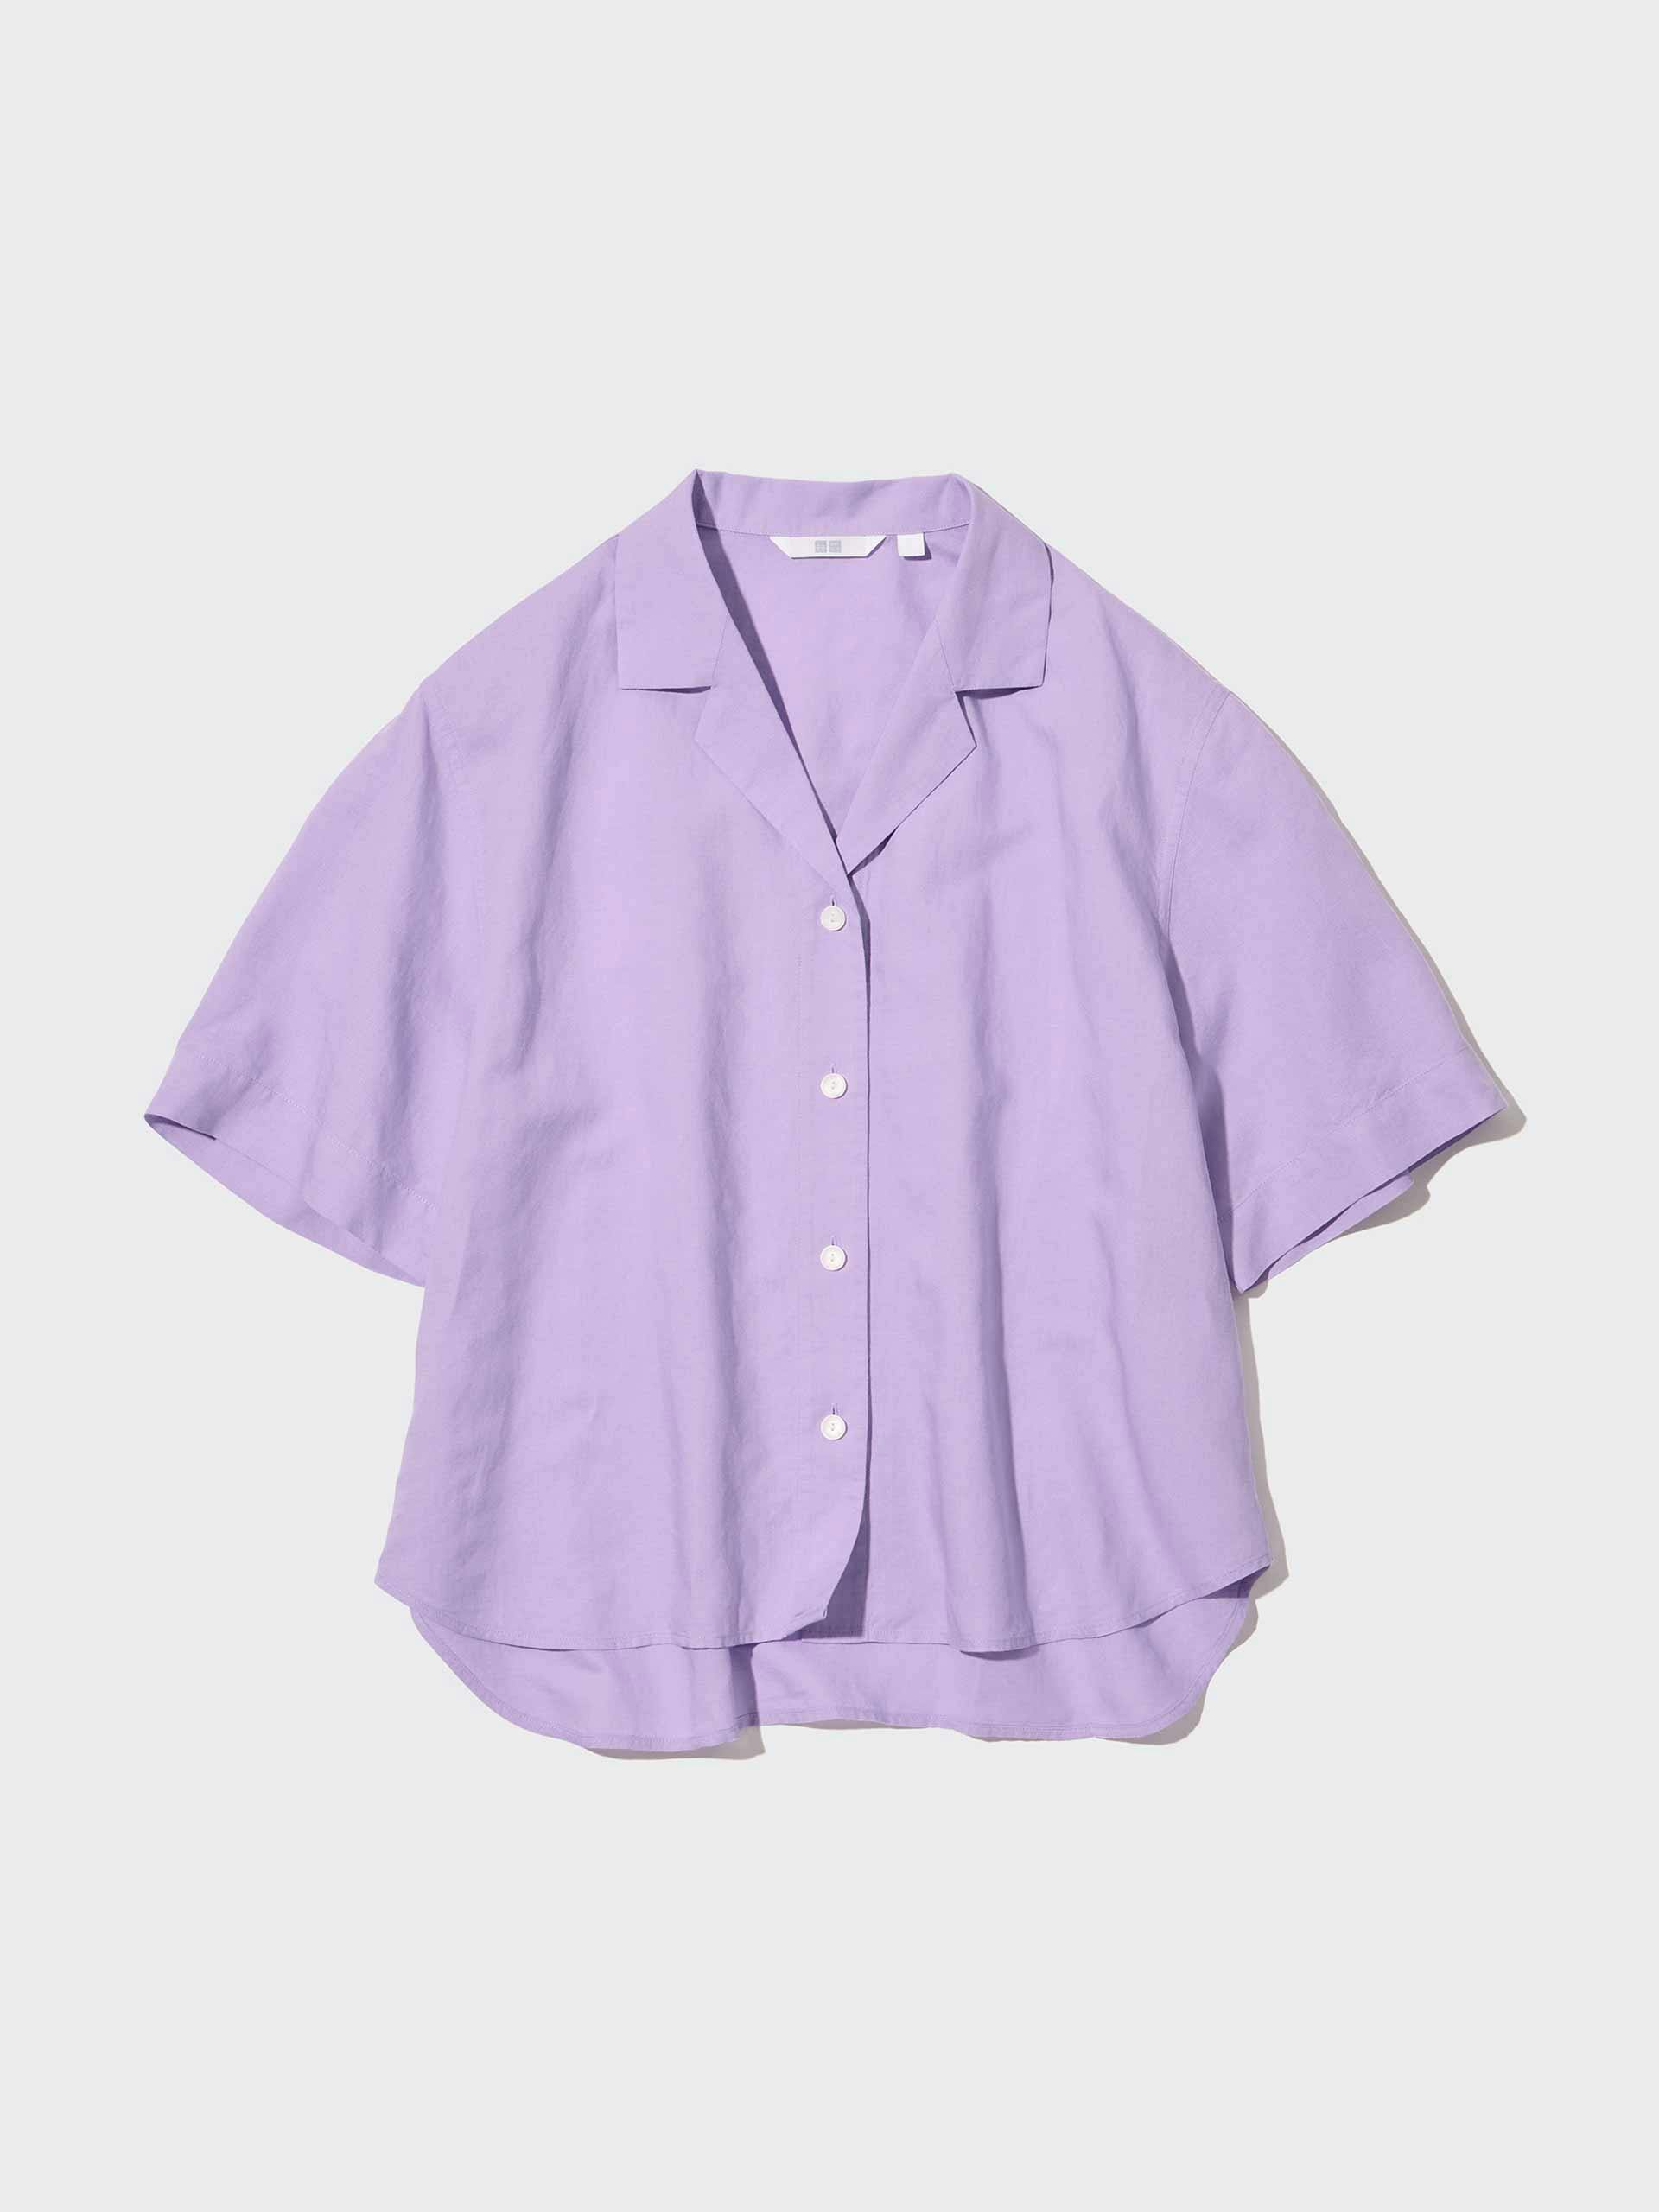 Purple linen blend short-sleeve shirt